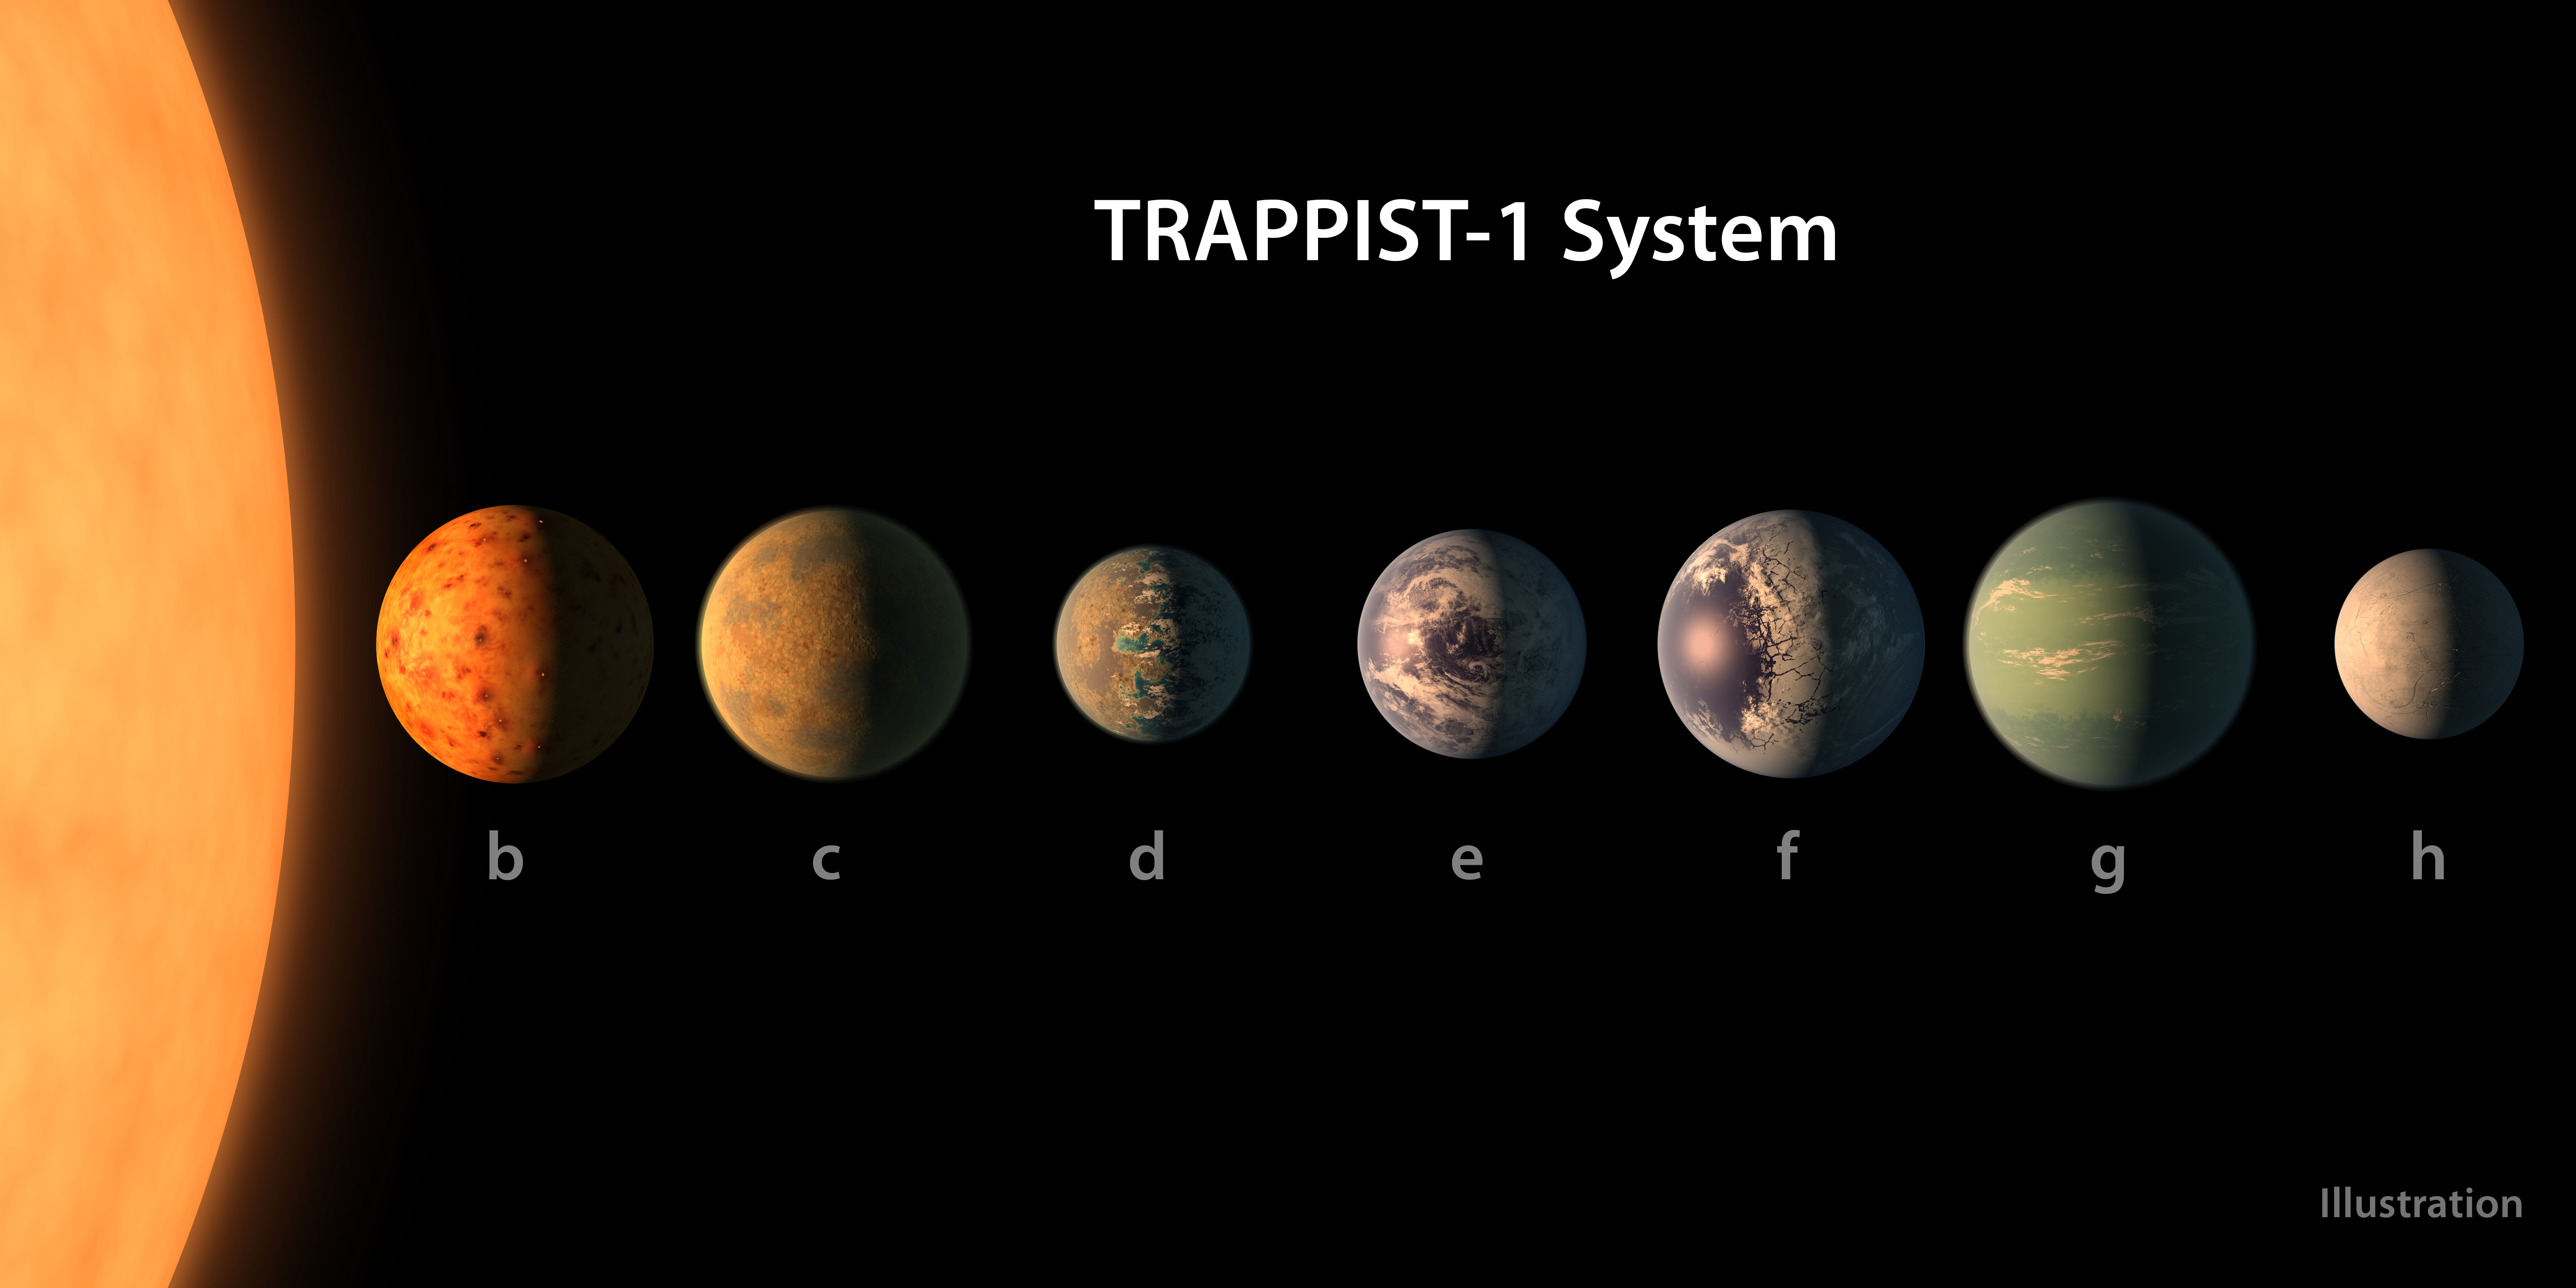 Die TRAPPIST-1 Planeten im Vergleich. Copyright: NASA/R. Hurt/T. Pyle